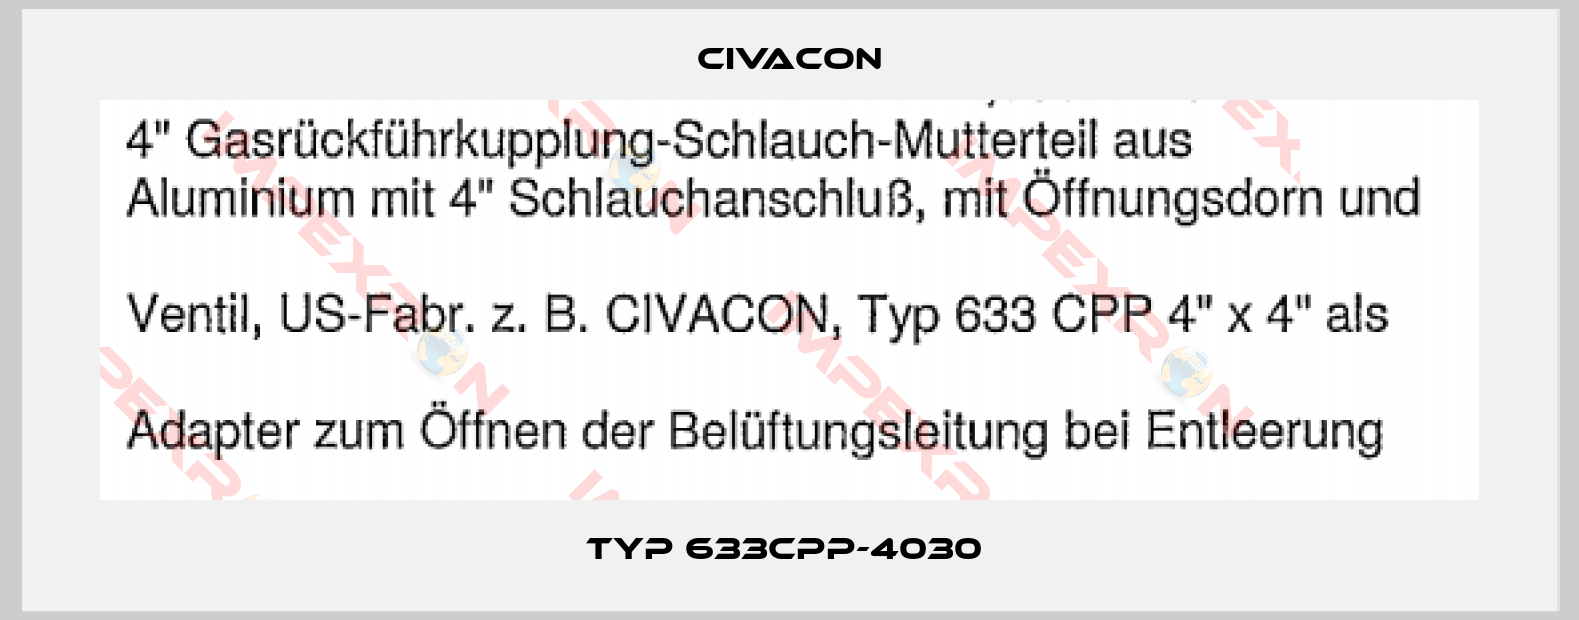 Civacon-Typ 633CPP-4030 